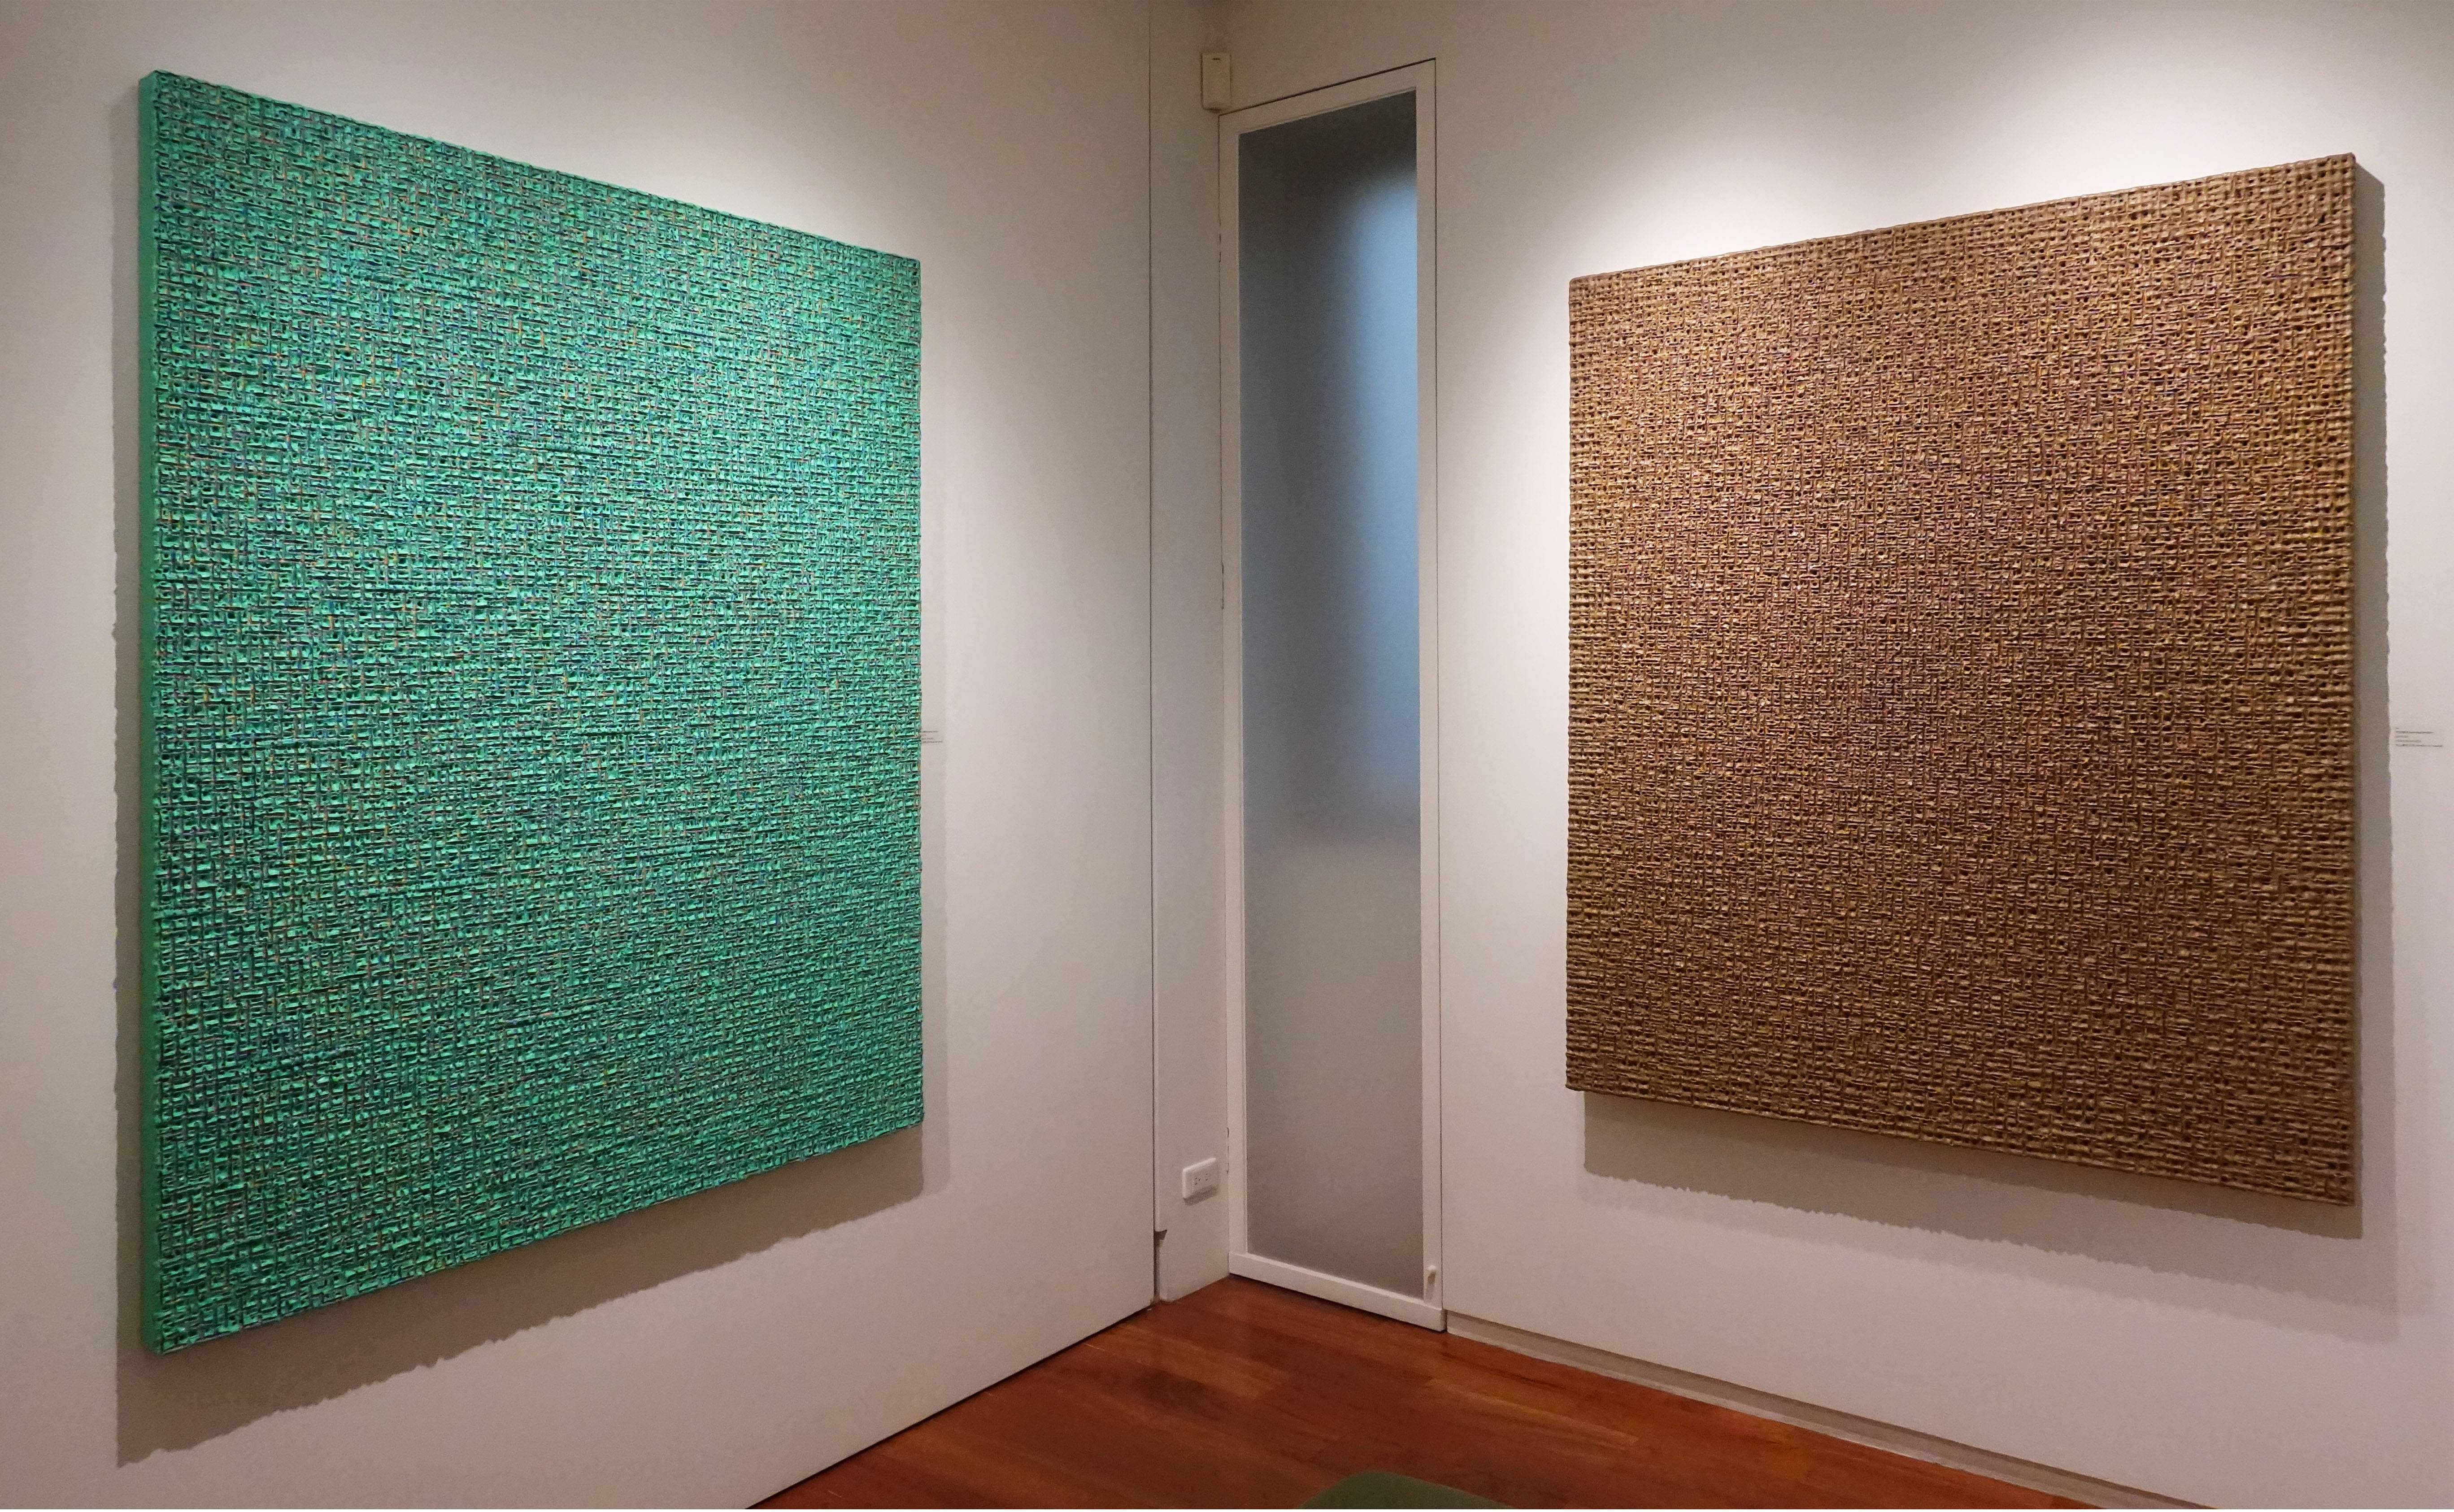 形而上畫廊展出「金泰浩-內在美學」系列作品現場一隅。